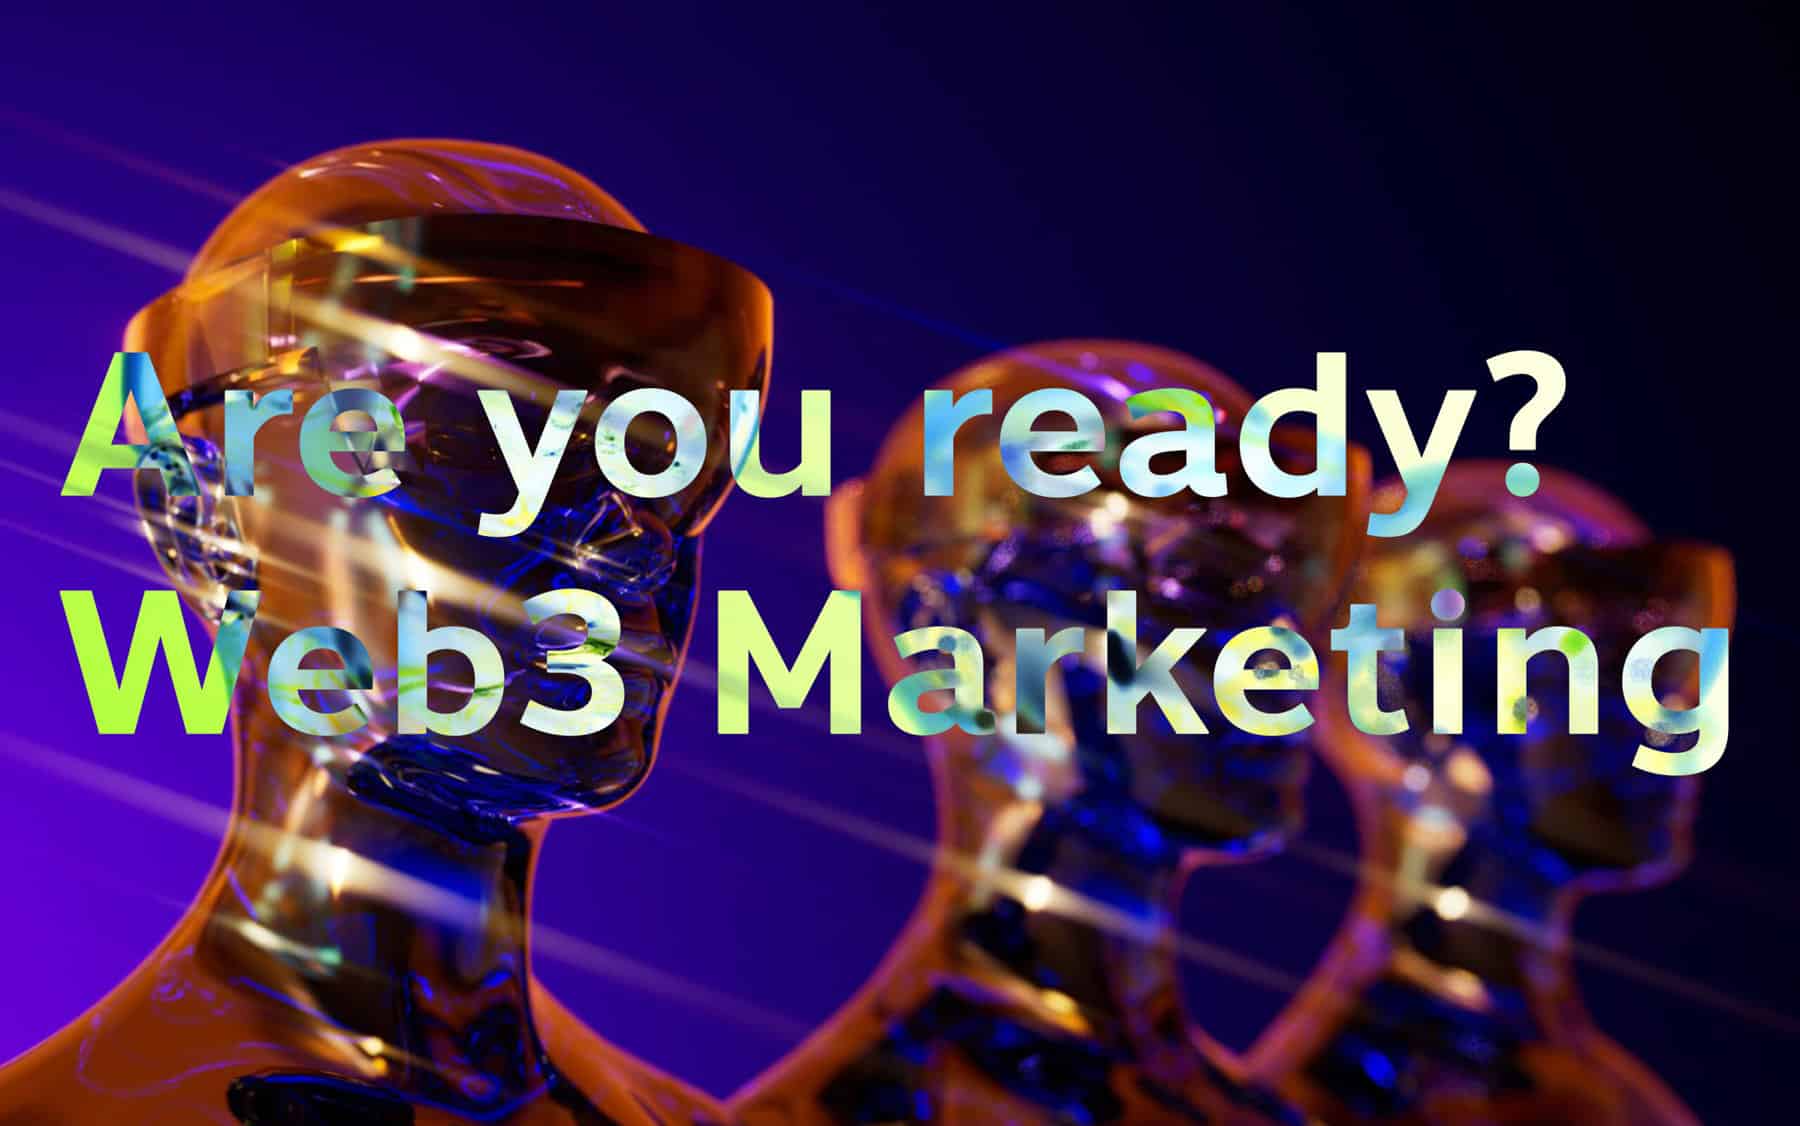 แนวทางการเตรียมตัวให้พร้อม Trends Web3 กับ Marketing